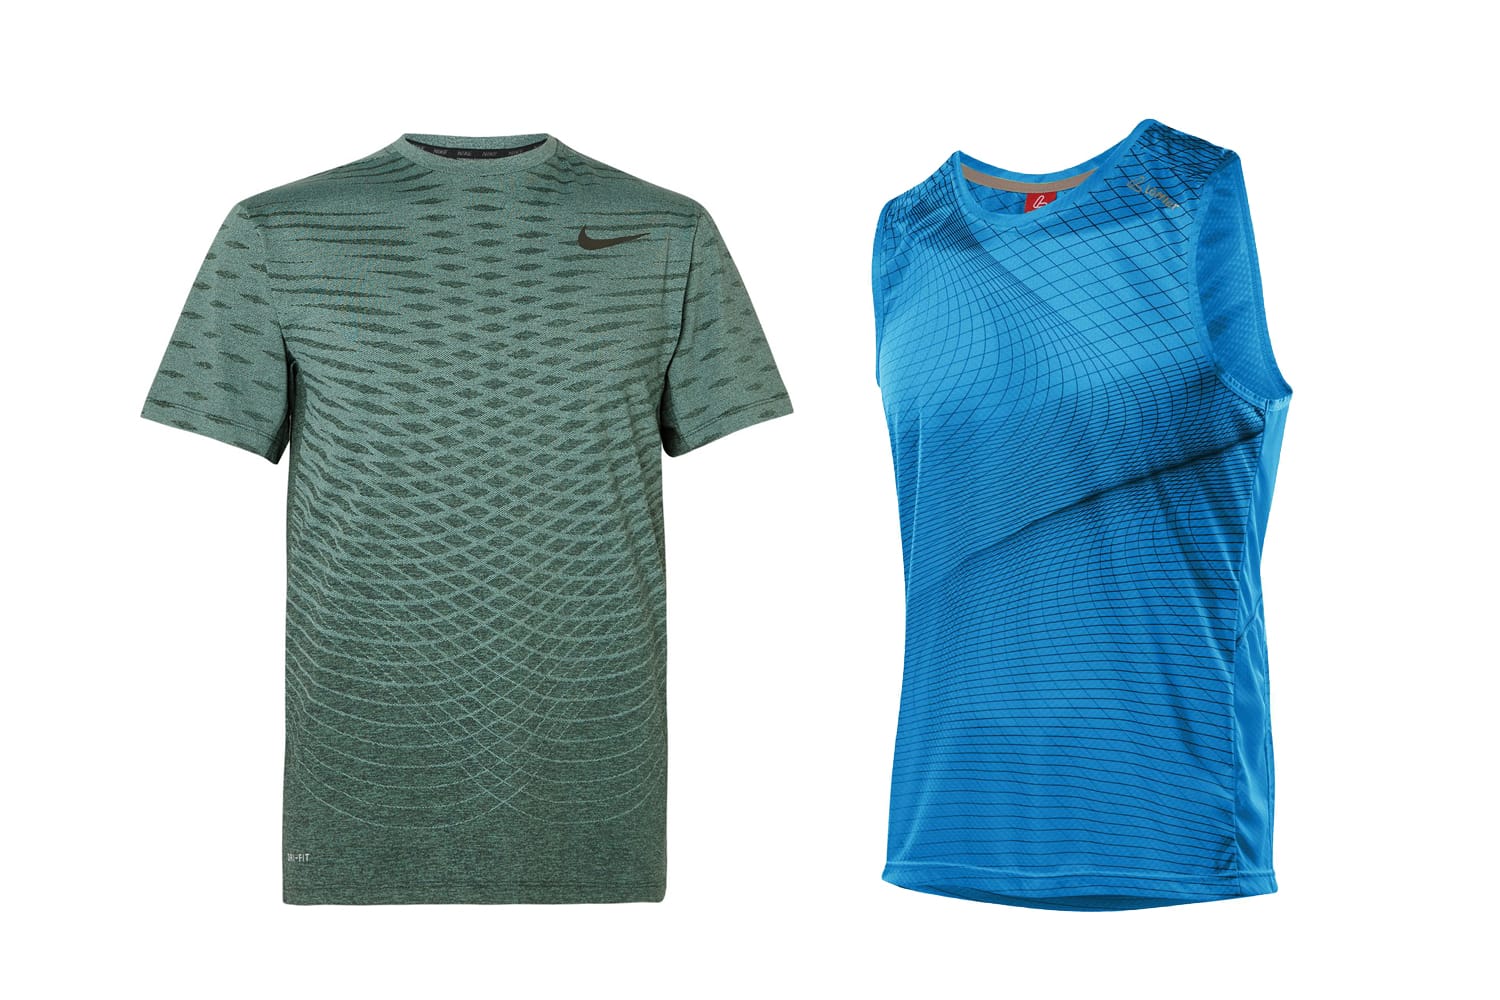 Das Running-Shirt von Nike (um 65 Euro) und das Tank von Löffler (um 49 Euro) überzeugen nicht nur durch sportliche Performance, sondern auch durch ihre coolen, grafischen Prints.